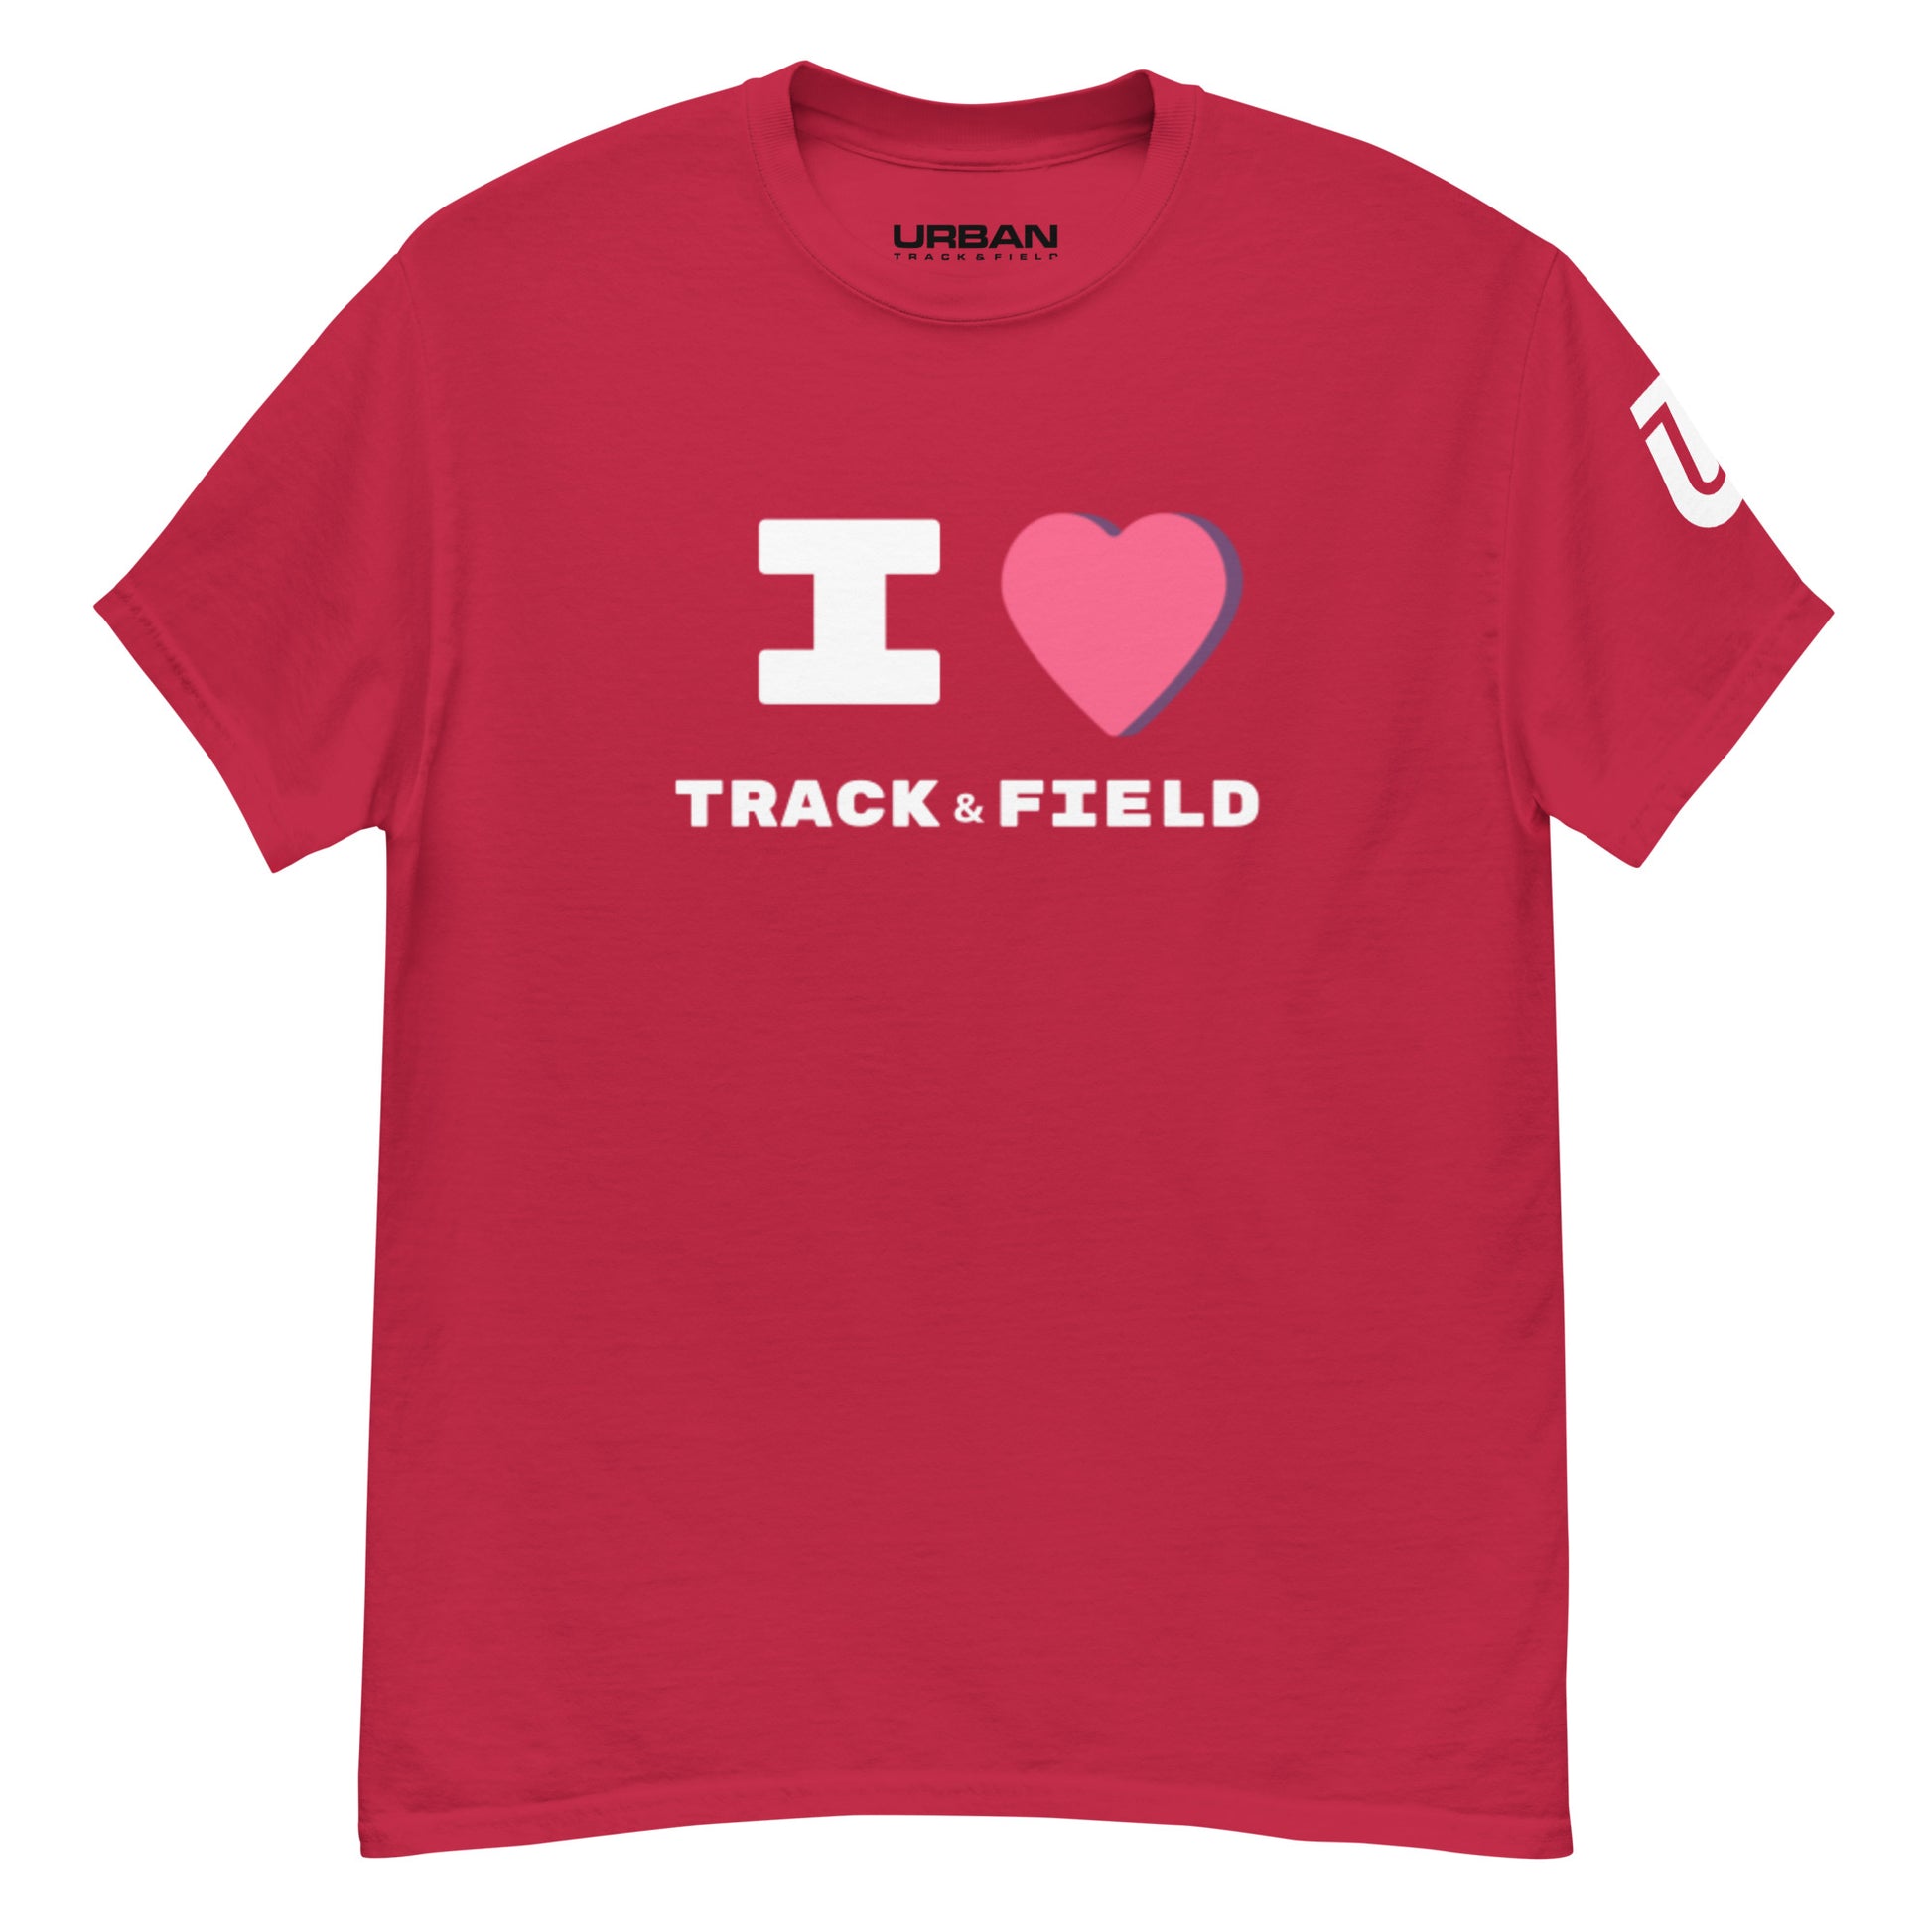 I LOVE Track & Field - URBAN T&F